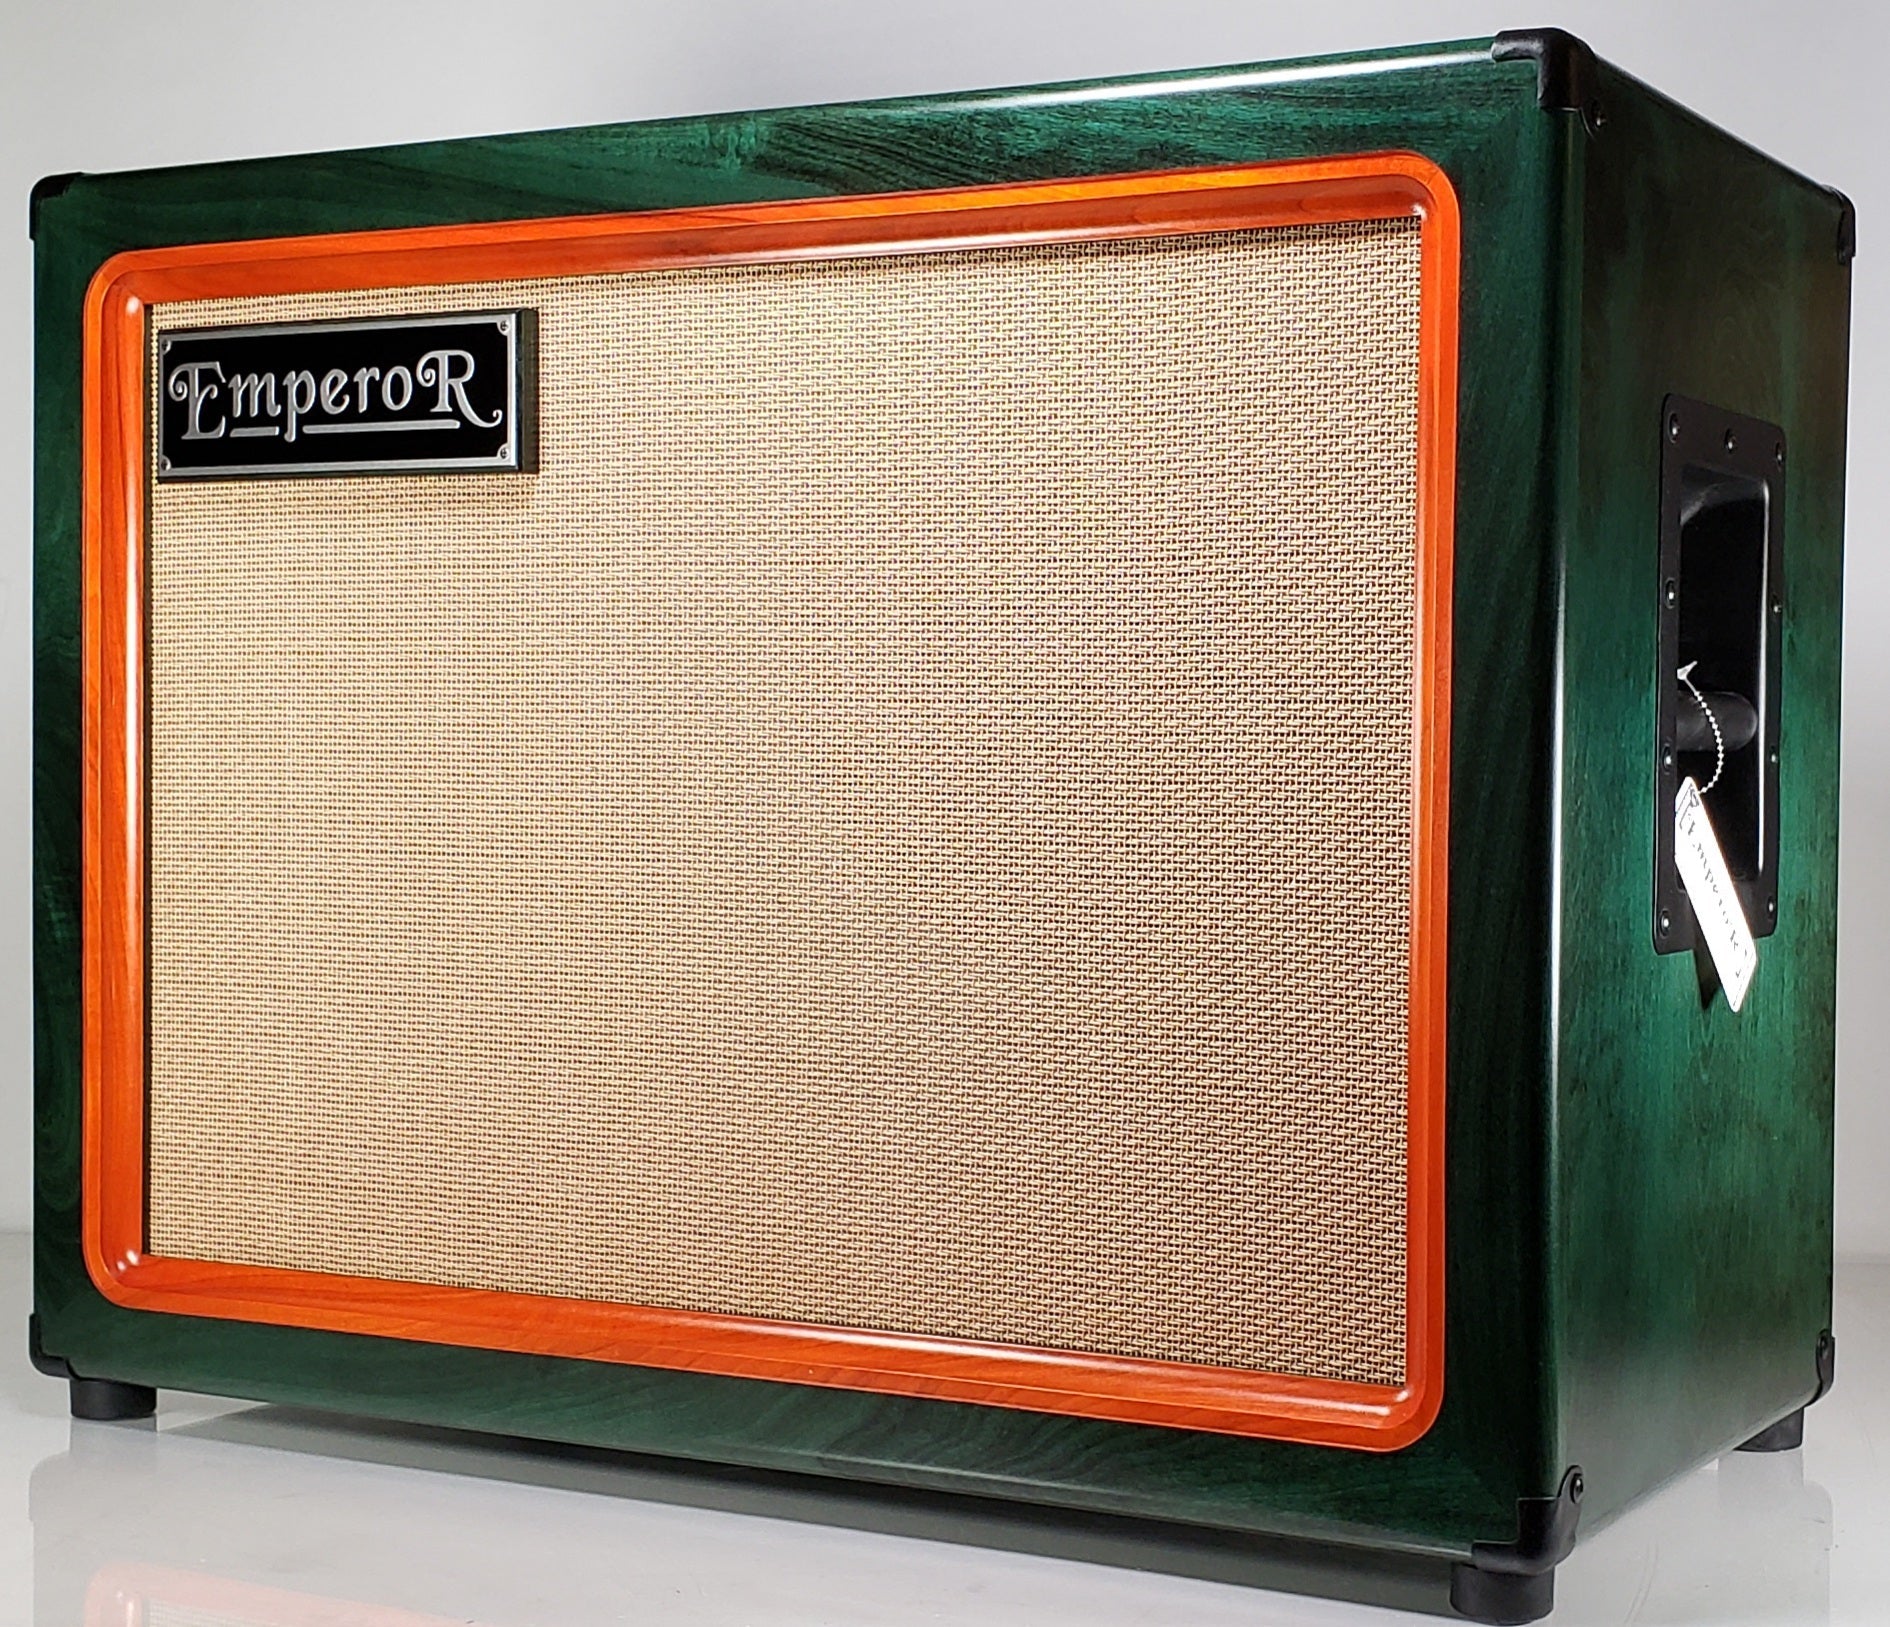 a green and orange 2x12 guitar speaker cabniet